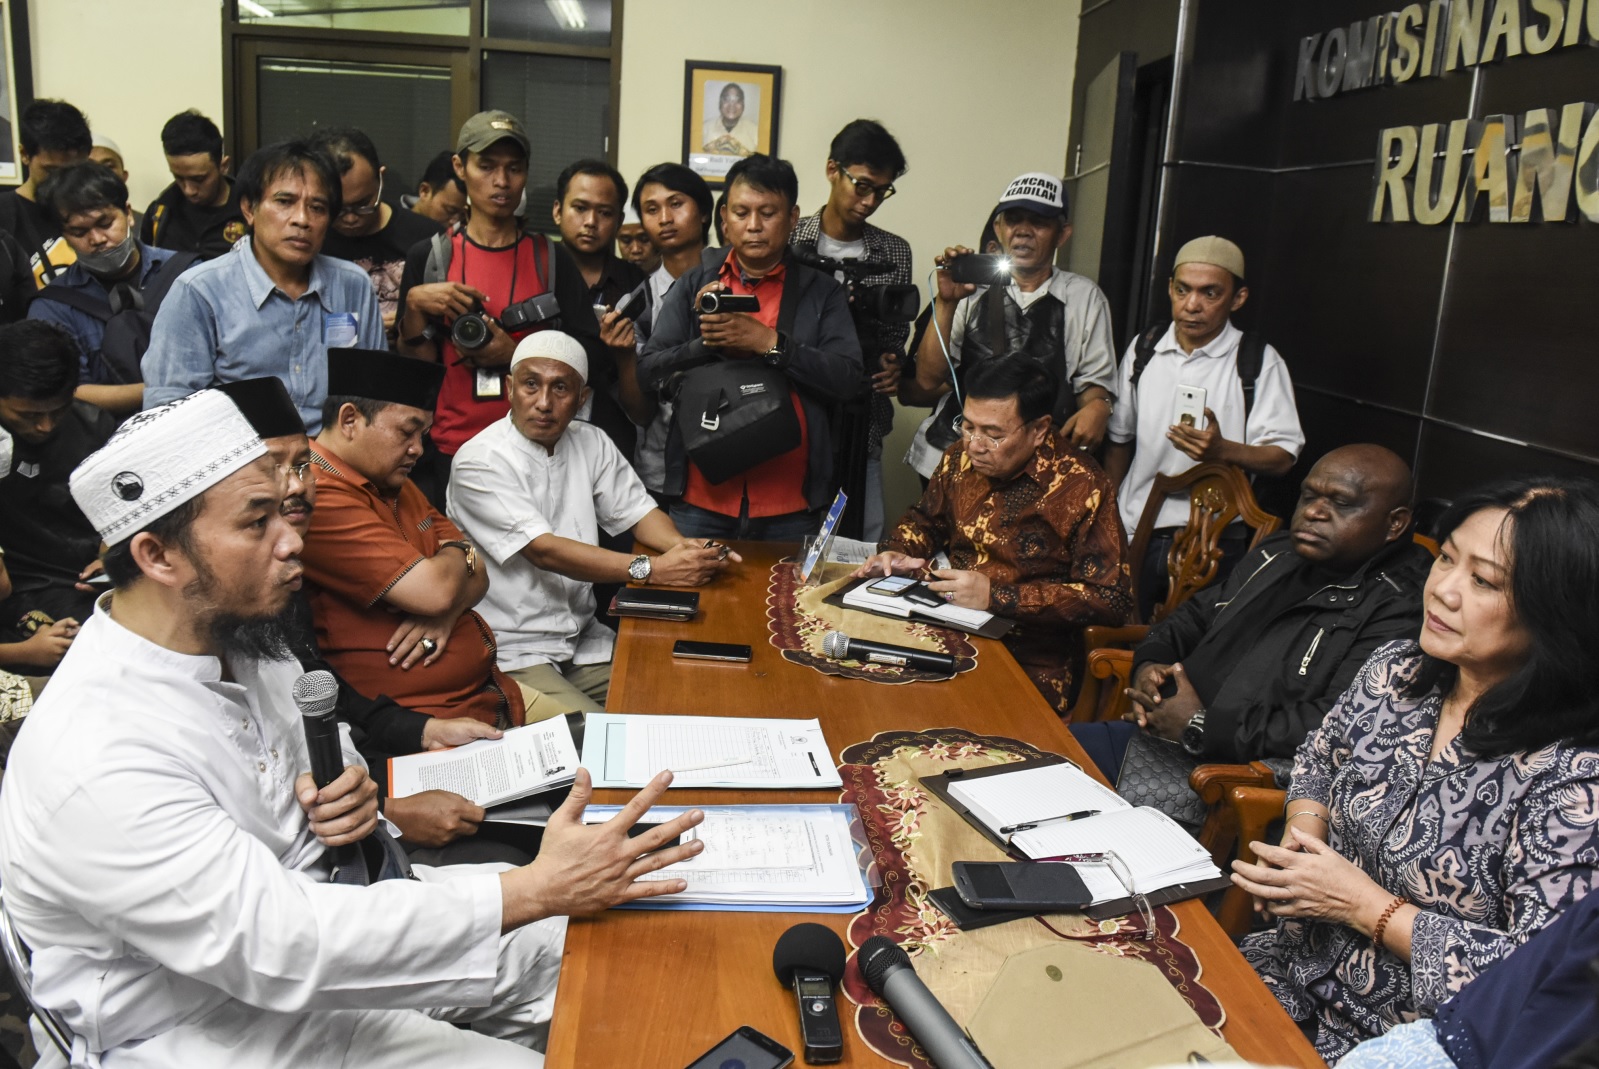 Ketua Presidium Alumni 212 Ansufri Idrus Sambo (kiri) menyampaikan tujuannya kepada Komisioner Komnas HAM Siane Indriani (kanan) dan Natalius Pigai (kedua kanan) saat mendatangi Komnas HAM, Jakarta, Jumat (14/7). (Foto: Antara)